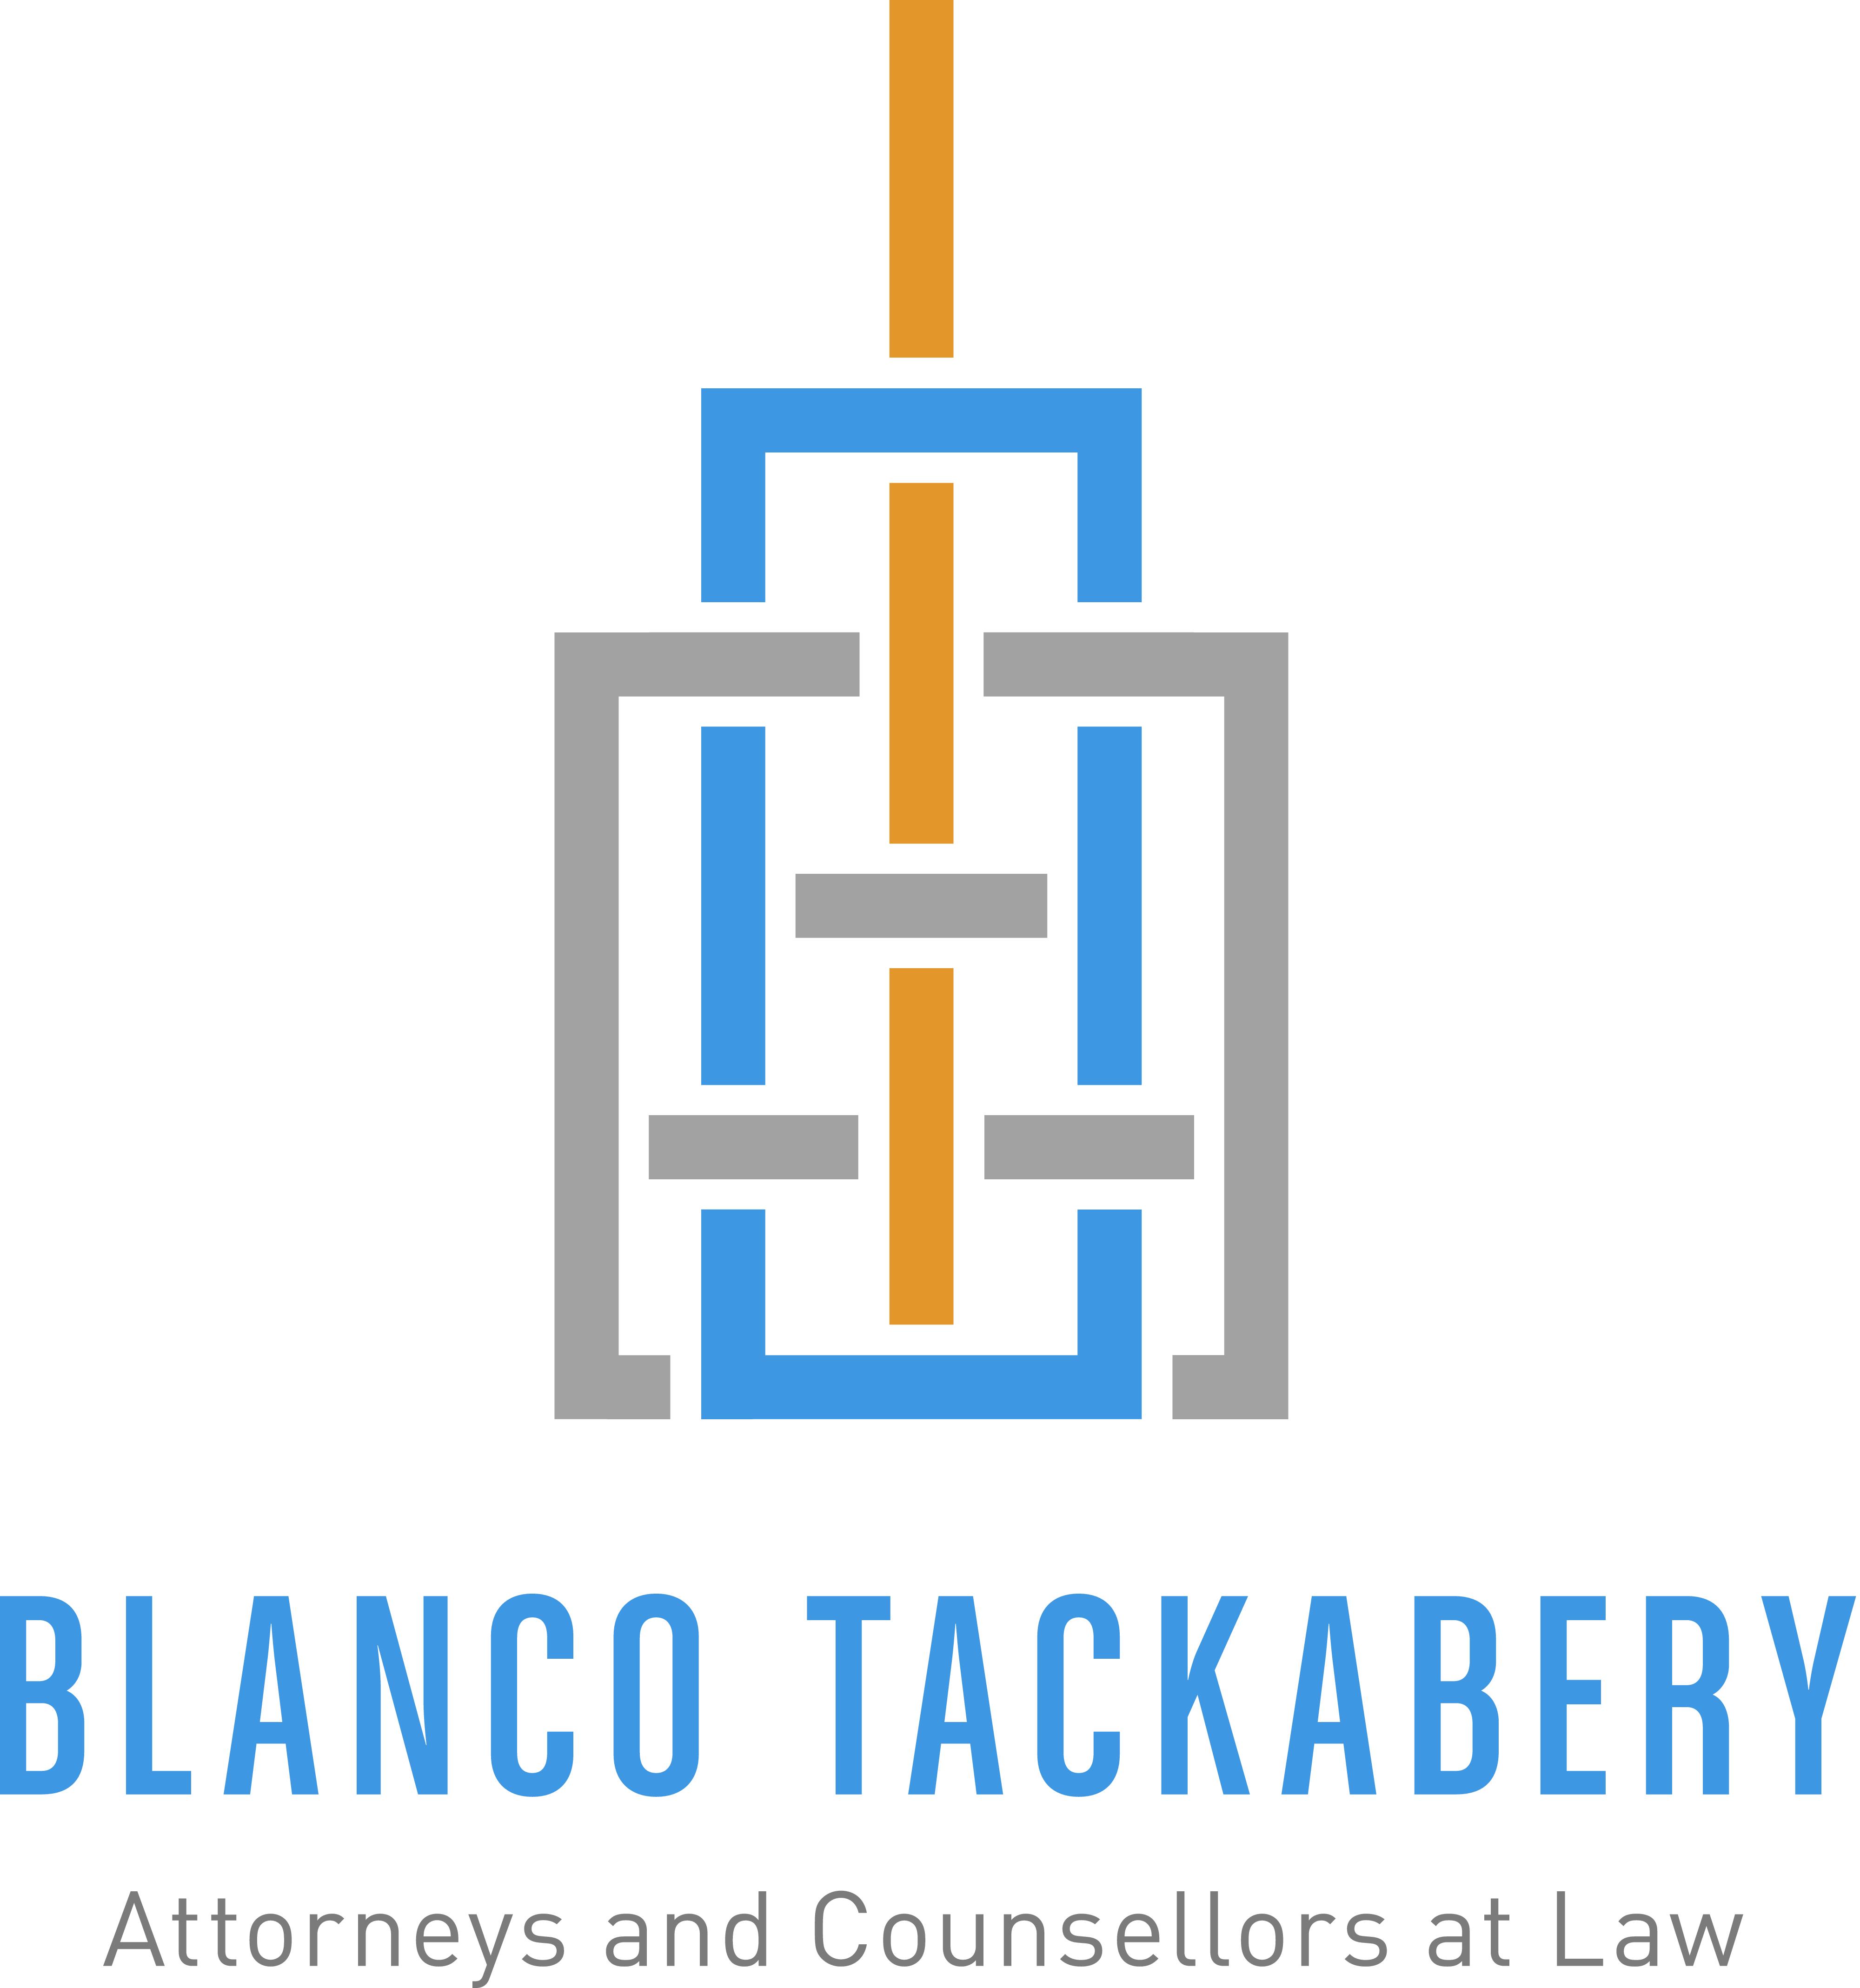 Blanco Tackabery